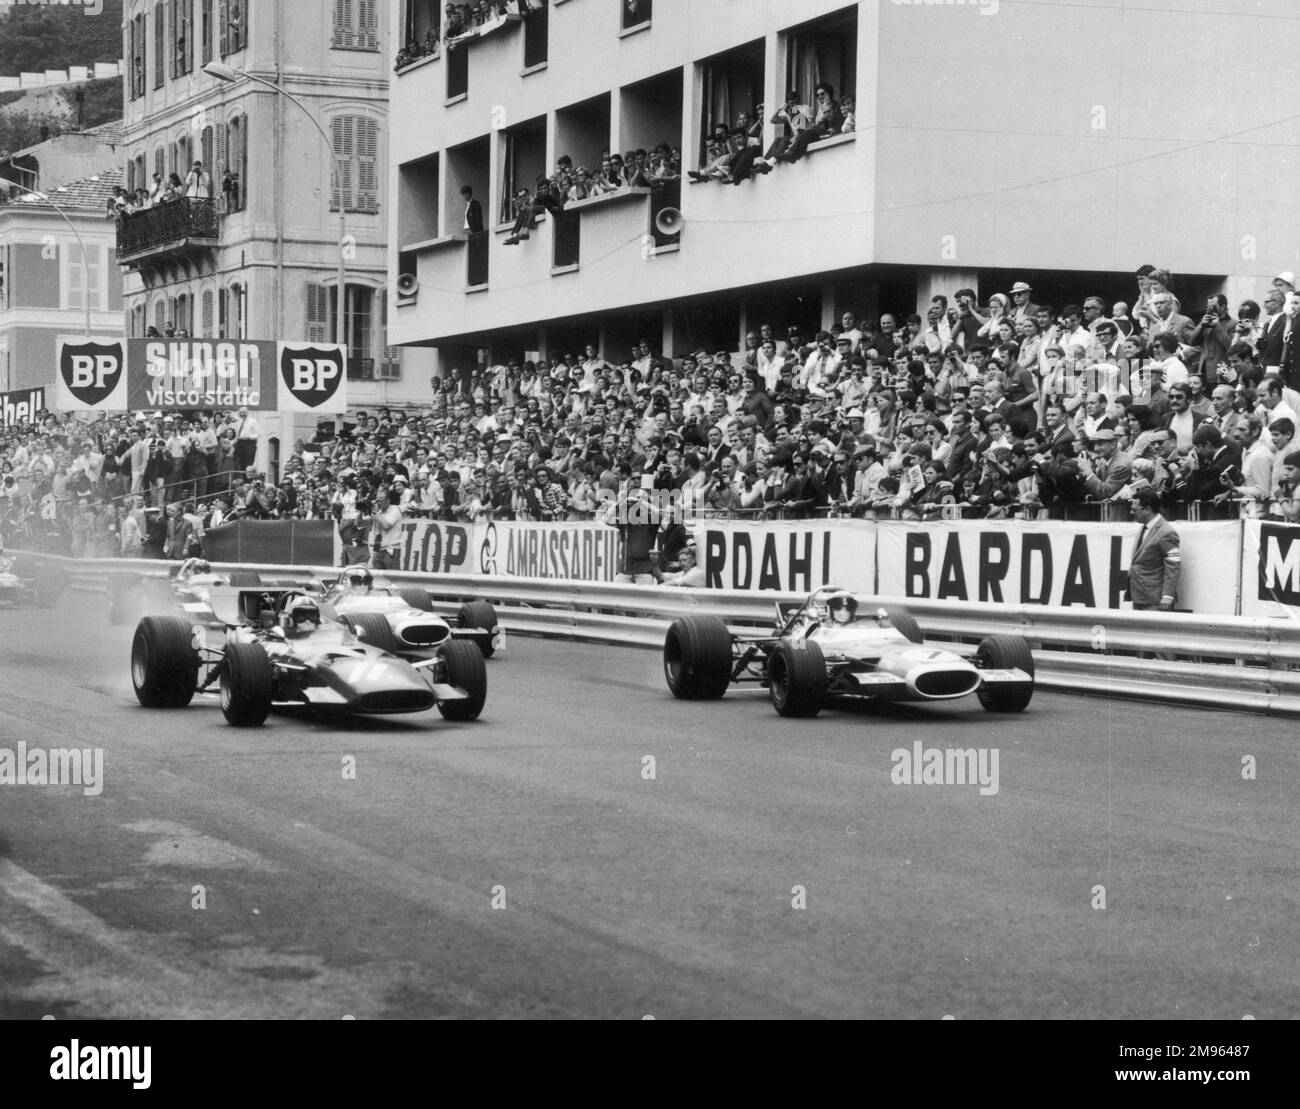 Jackie Stewart, in una Matra-Ford (7), conduce la Ferrari di Chris Amon (11) lontano dalla griglia di partenza al Gran Premio di Monaco. Entrambi non sono riusciti a finire la gara. Foto Stock